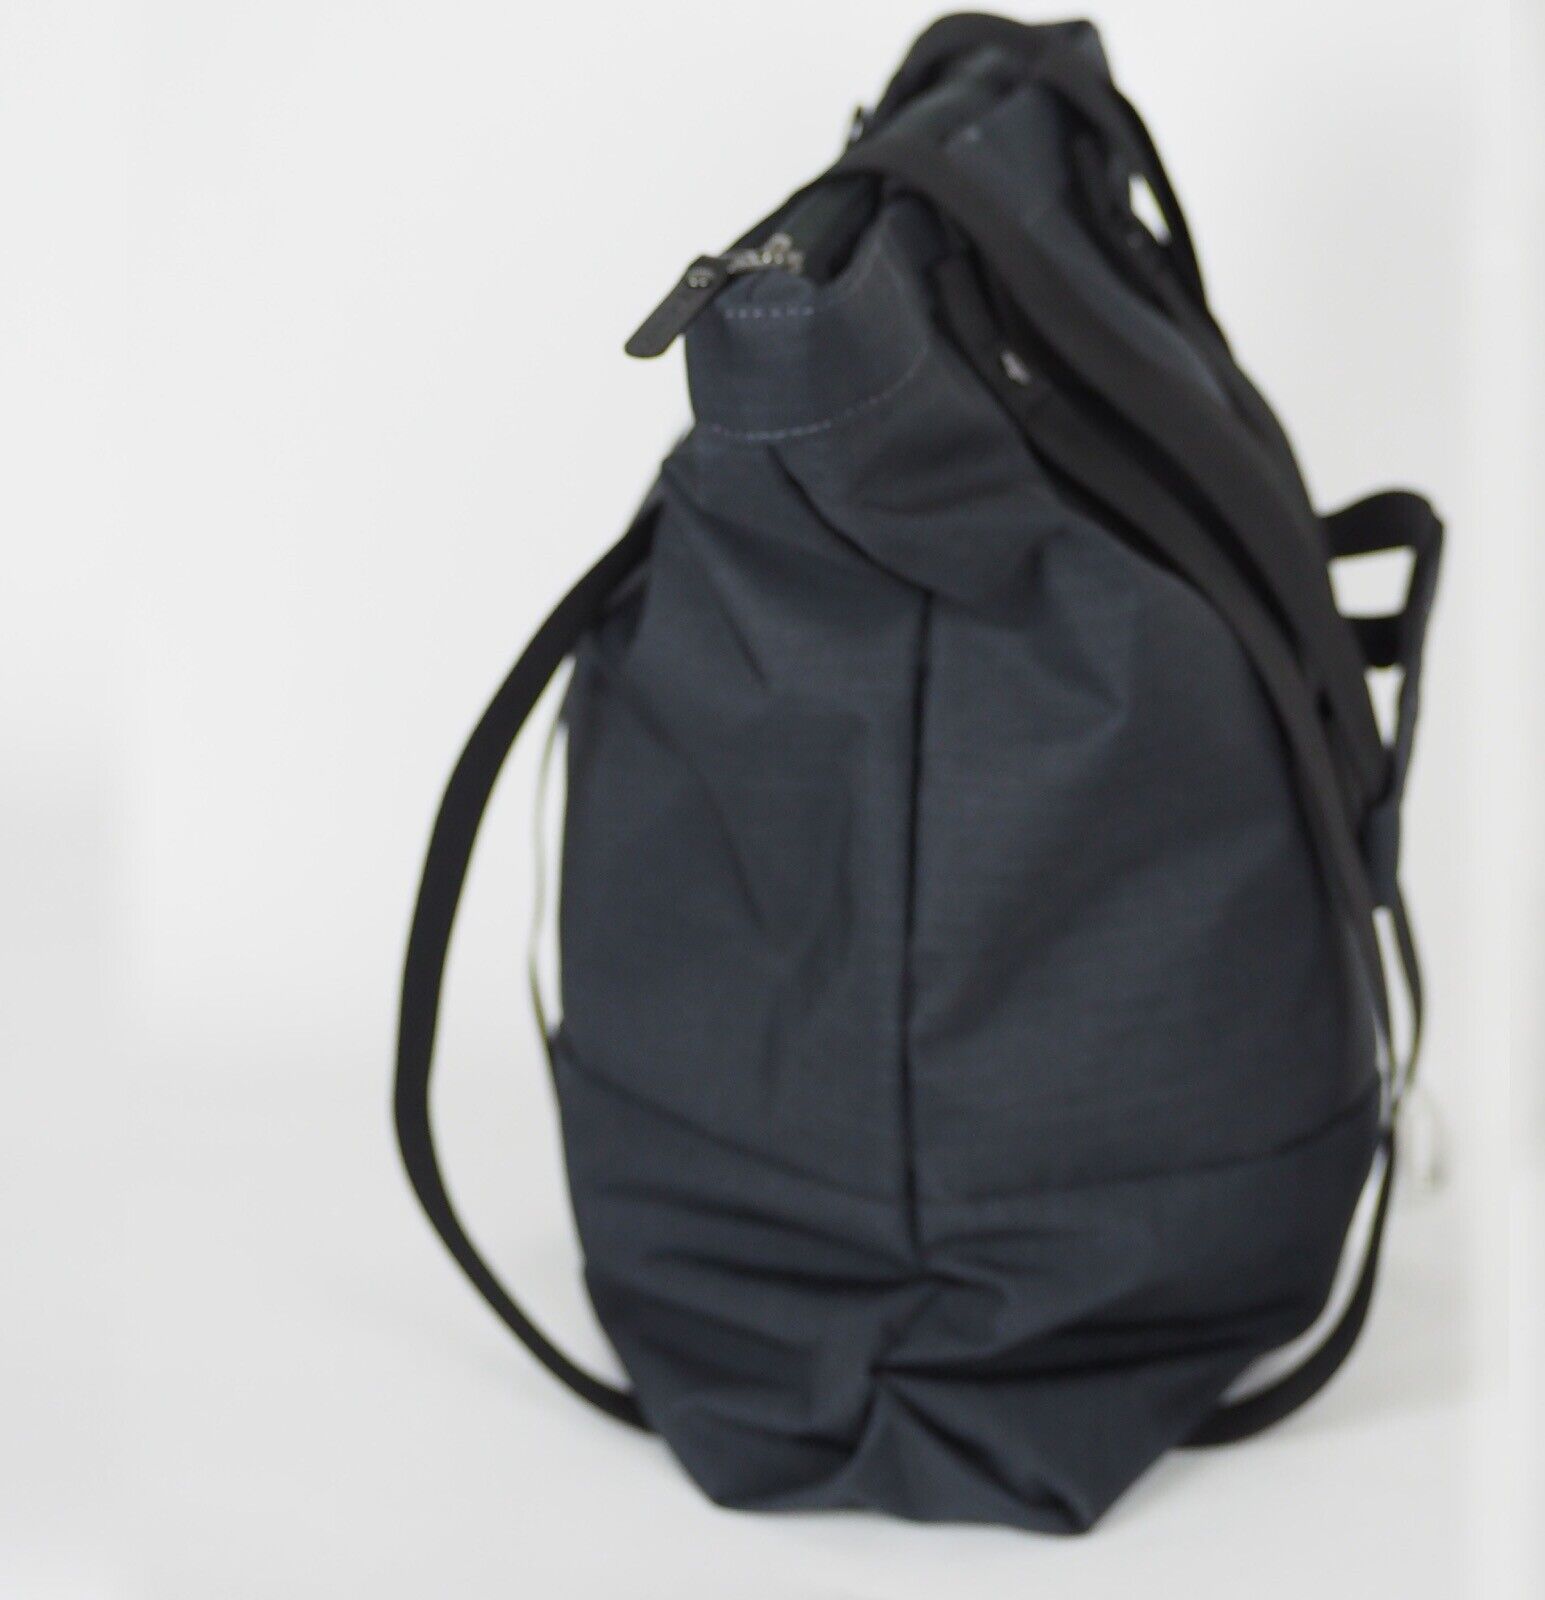 Jack Wolfskin 24/7 Blend 2009391 Phantom Heather Casual Shoulder Bag Backpack - London Top Style